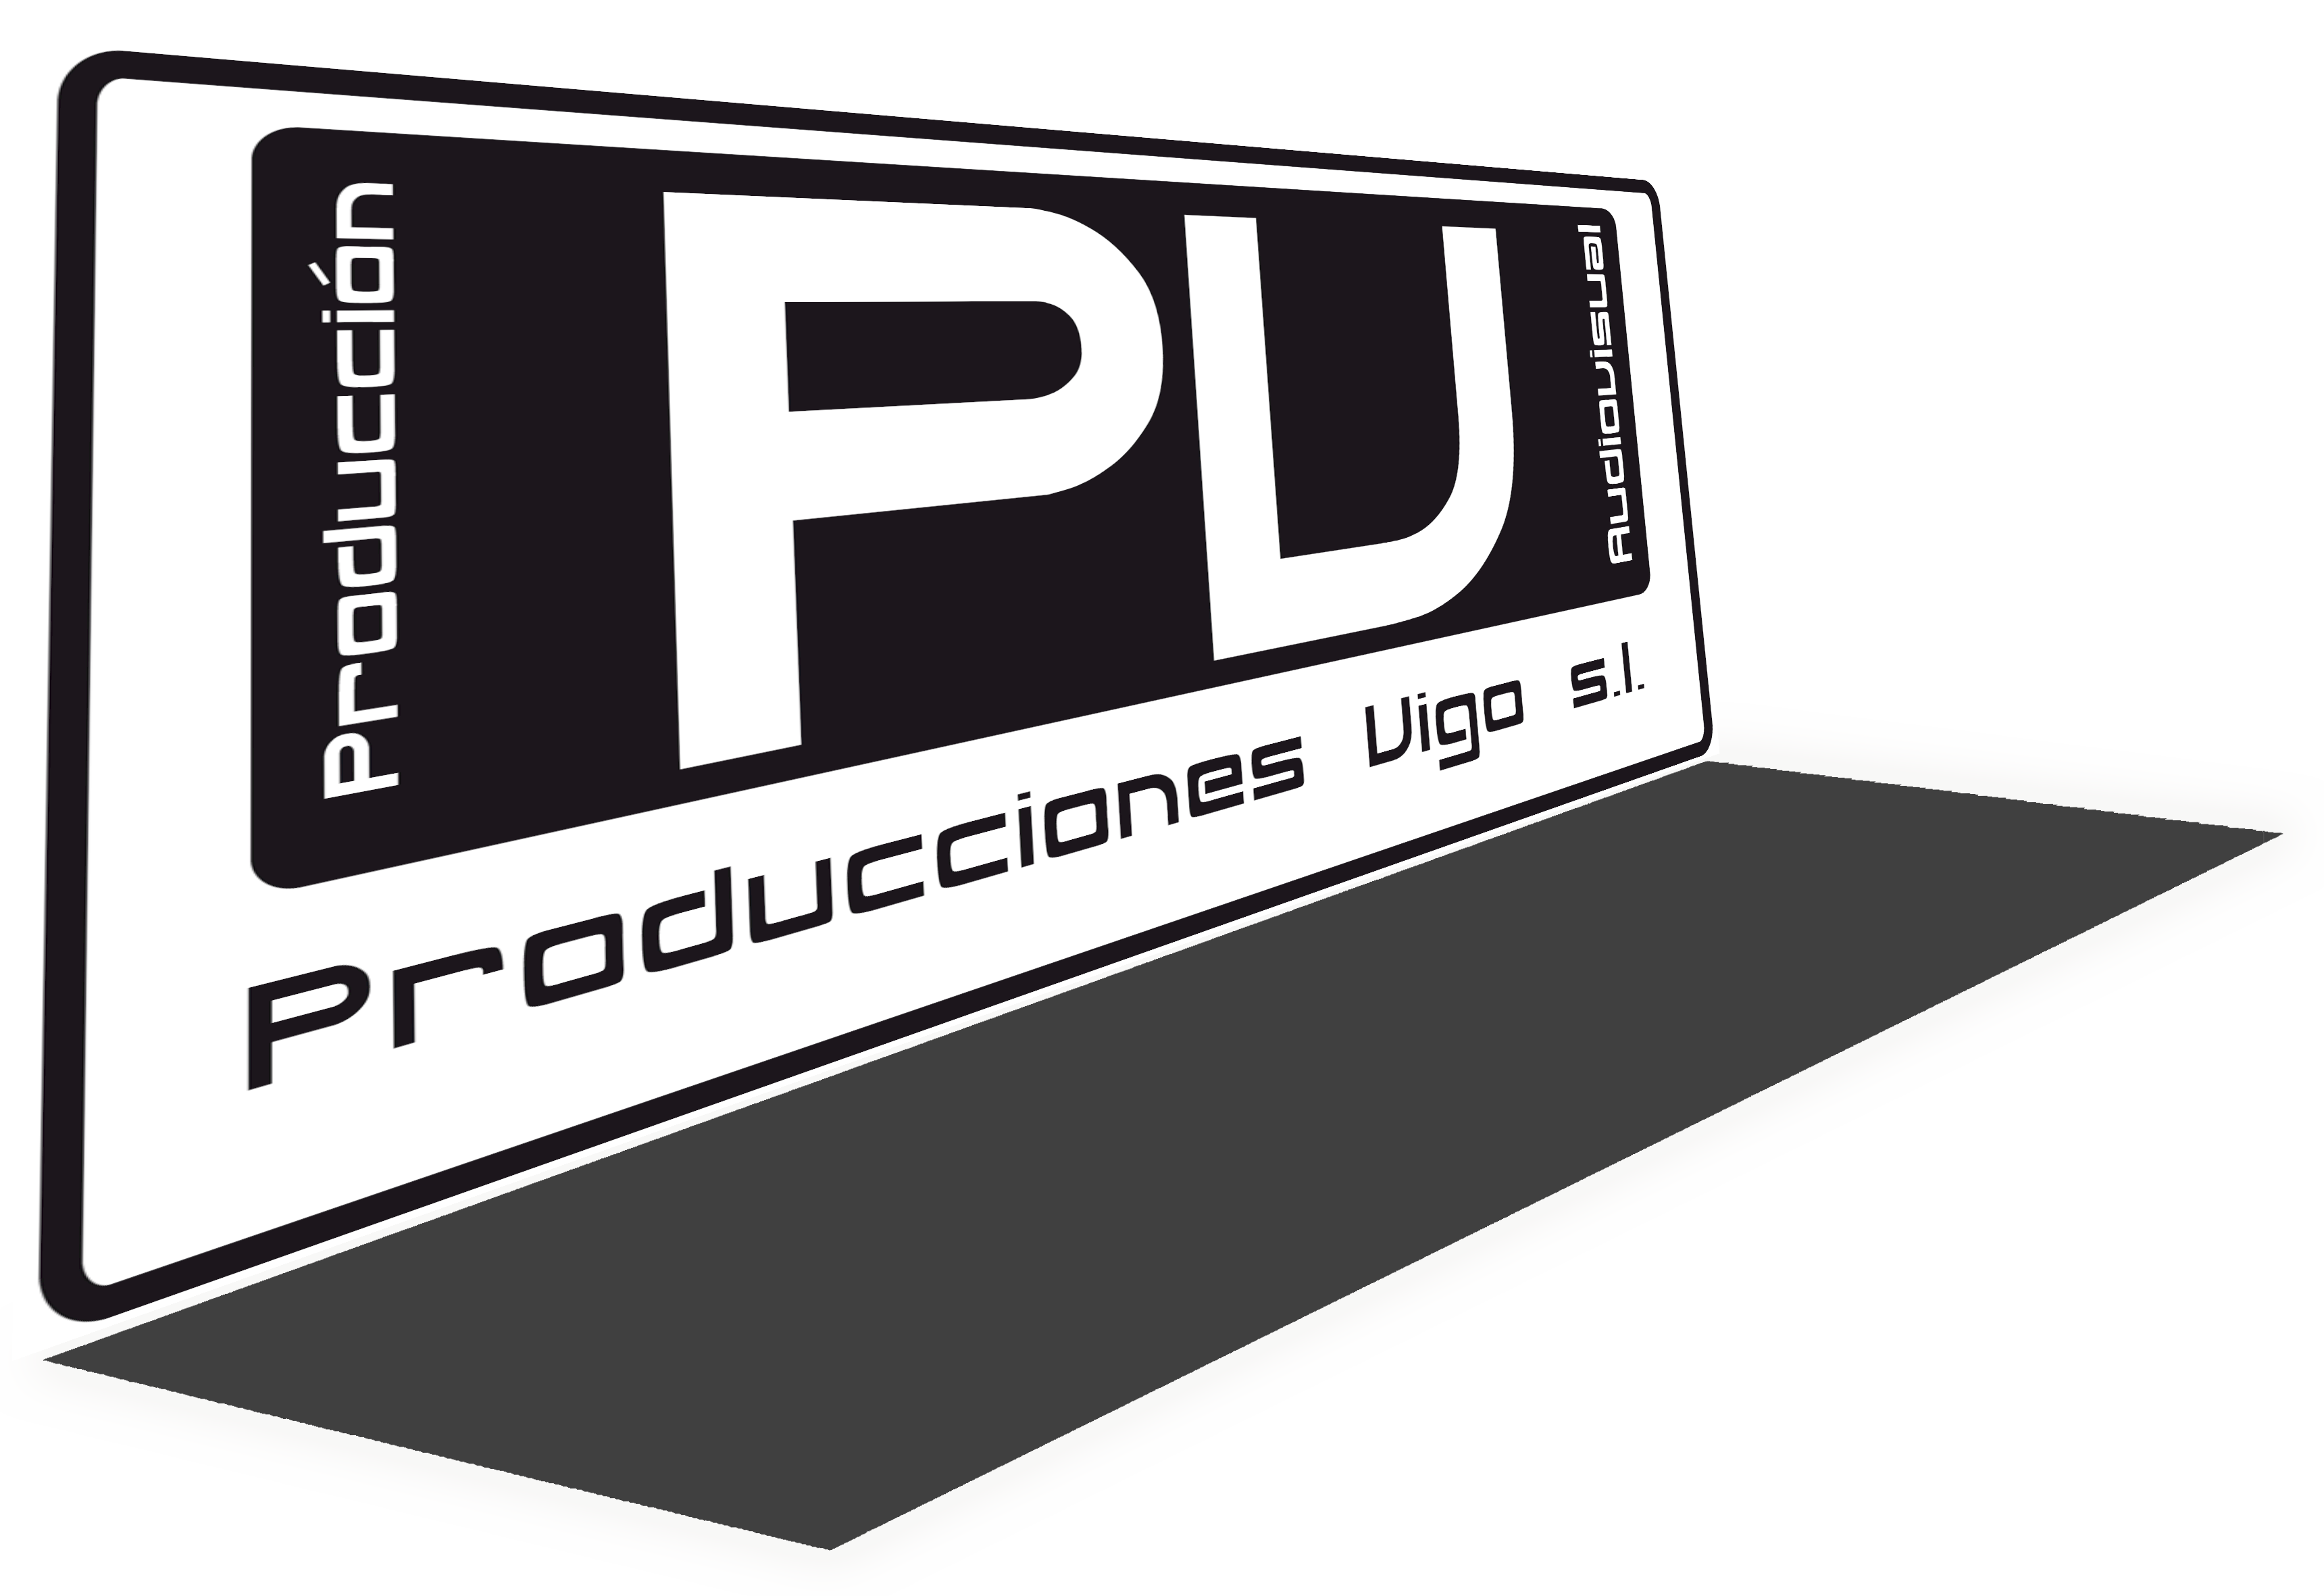 produccionesvigo_logo